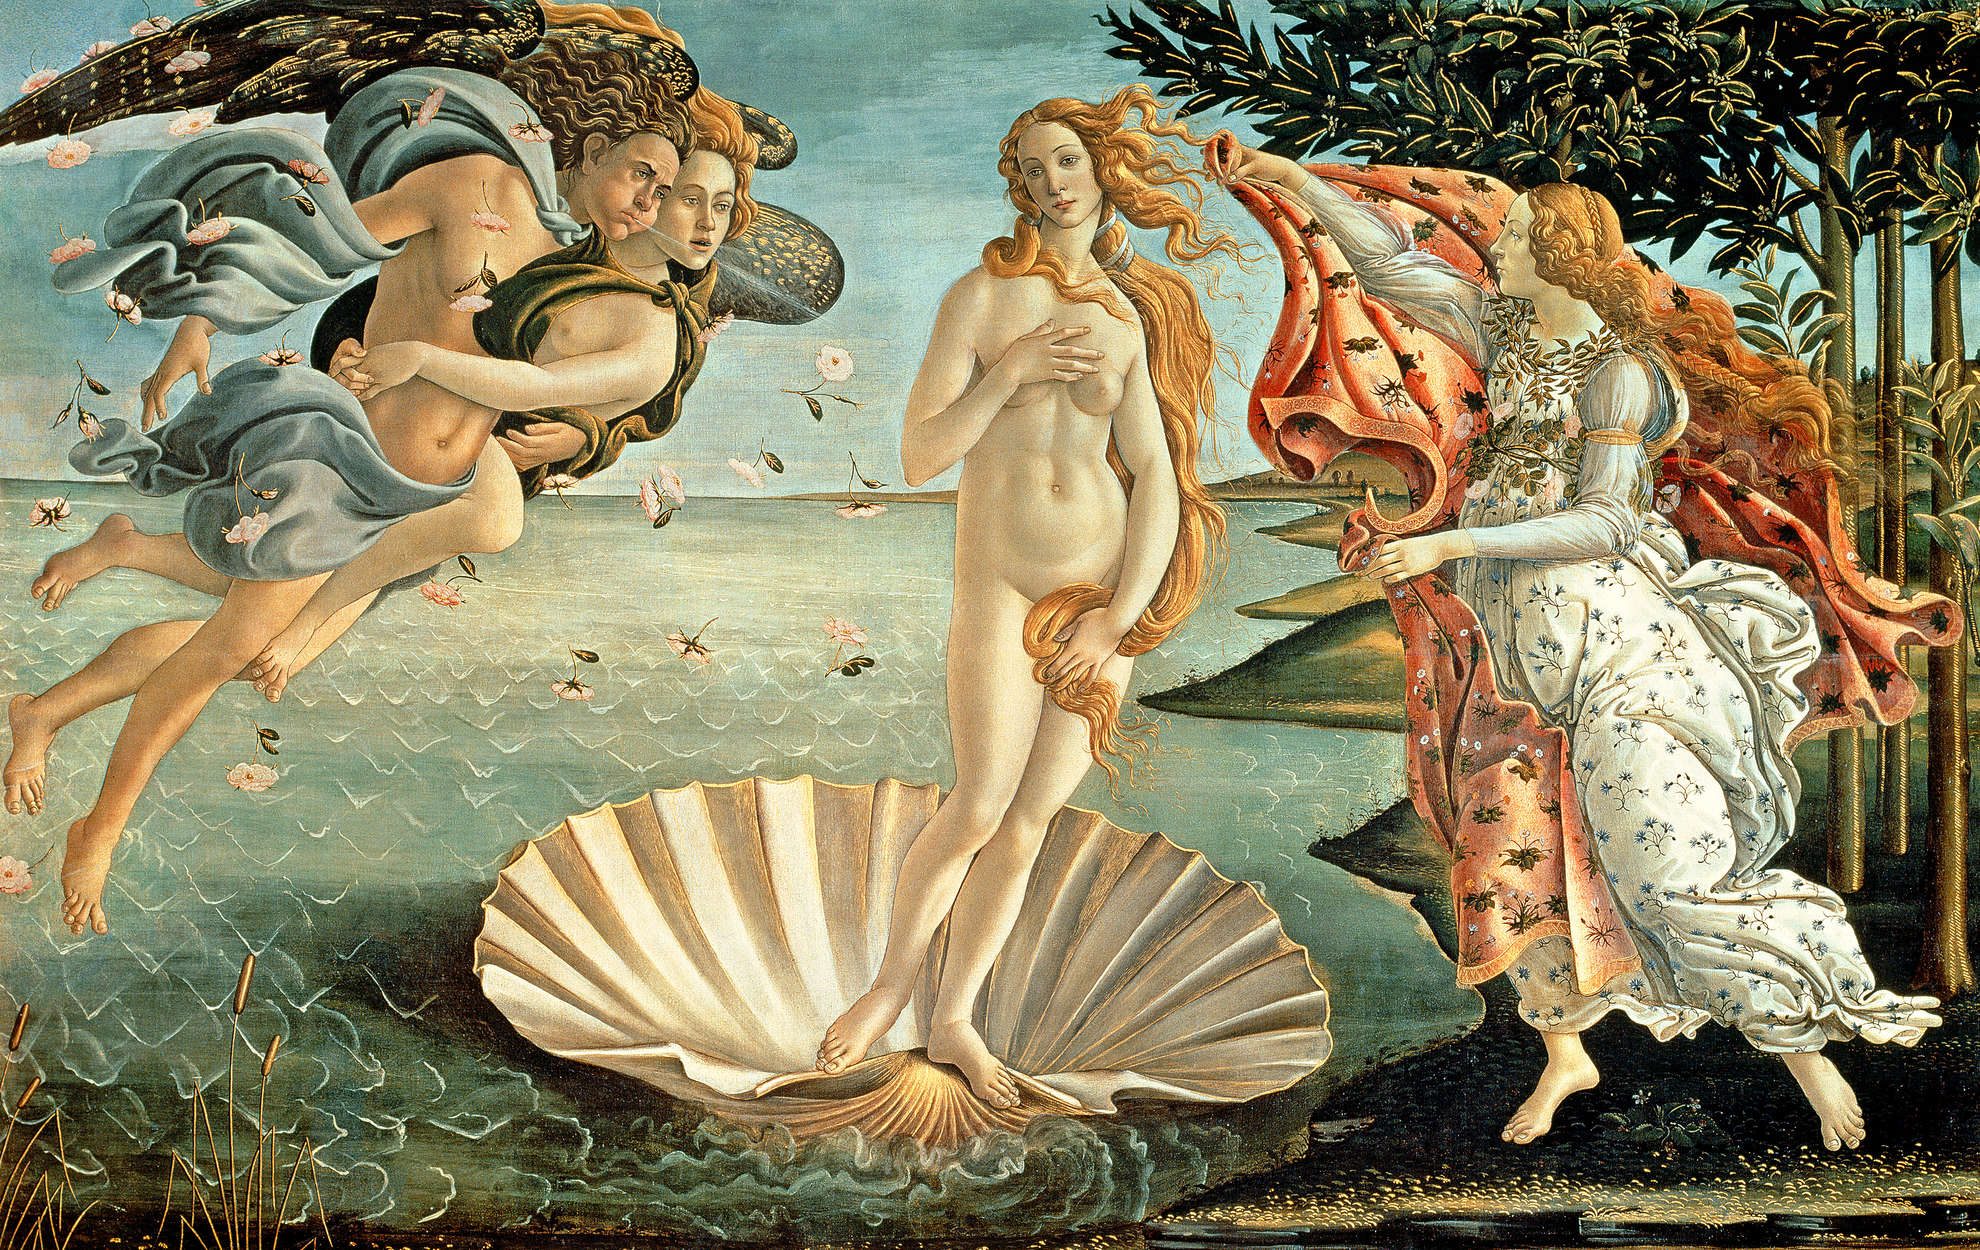             Papier peint panoramique "La naissance de Vénus" de Sandro Botticelli
        